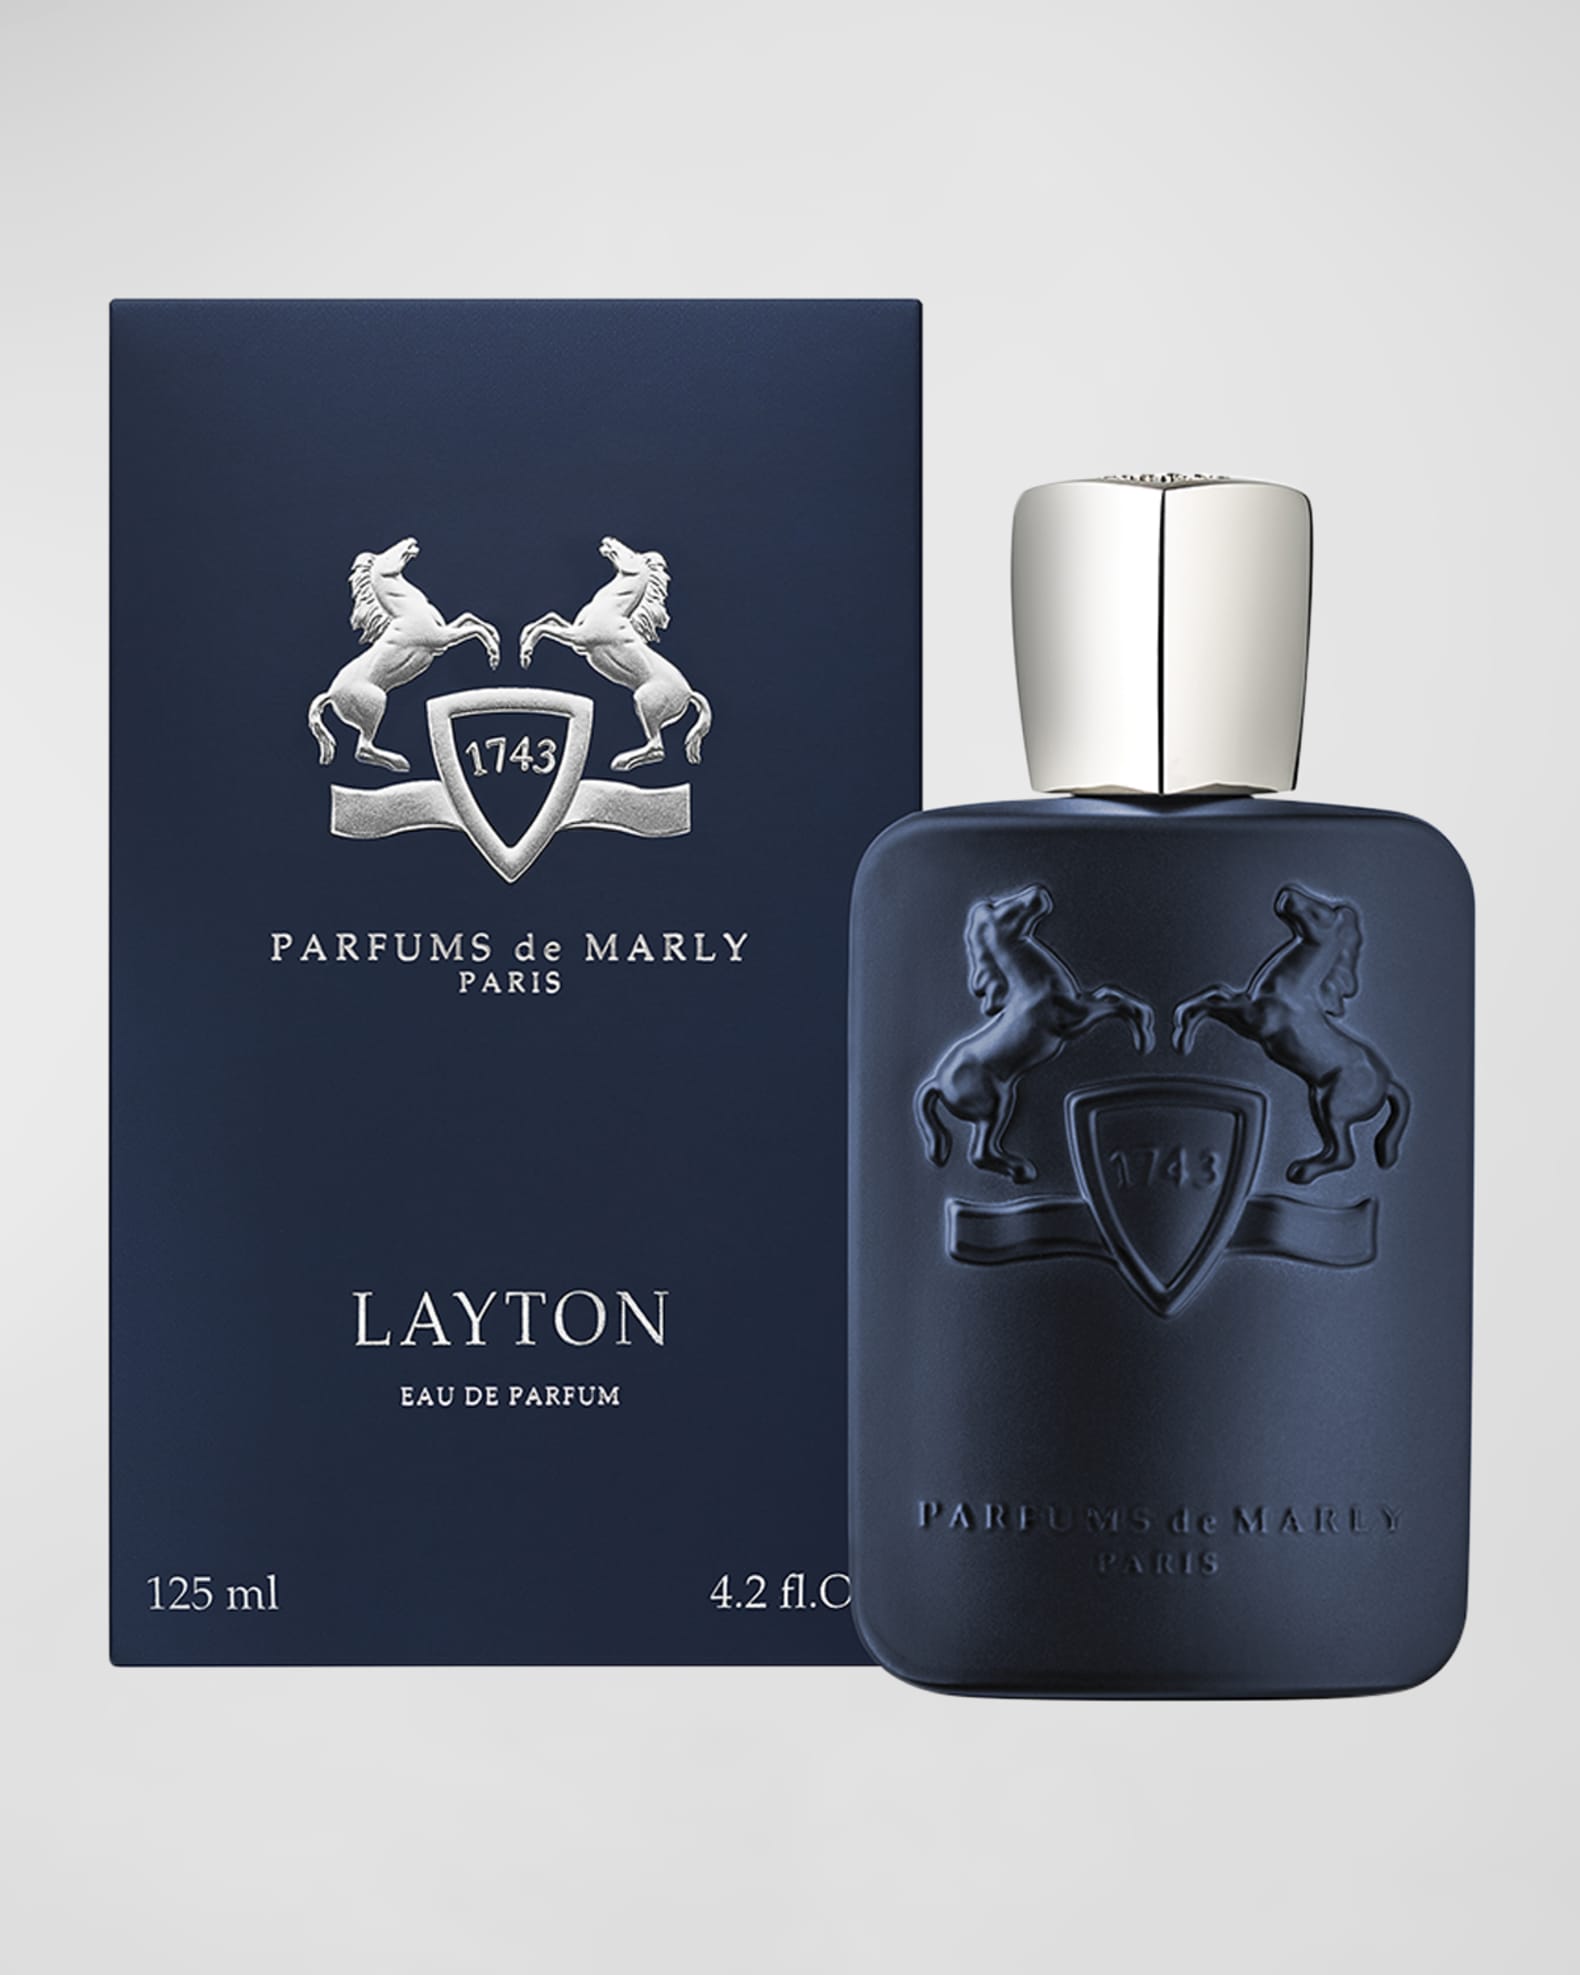 PARFUMS de MARLY - Layton - 4.2 Fl Oz - Eau De Parfum for Men - Top Notes  Apple, Bergamot, Lavender - Heart Notes Jasmine, Violet, Geranium - Base